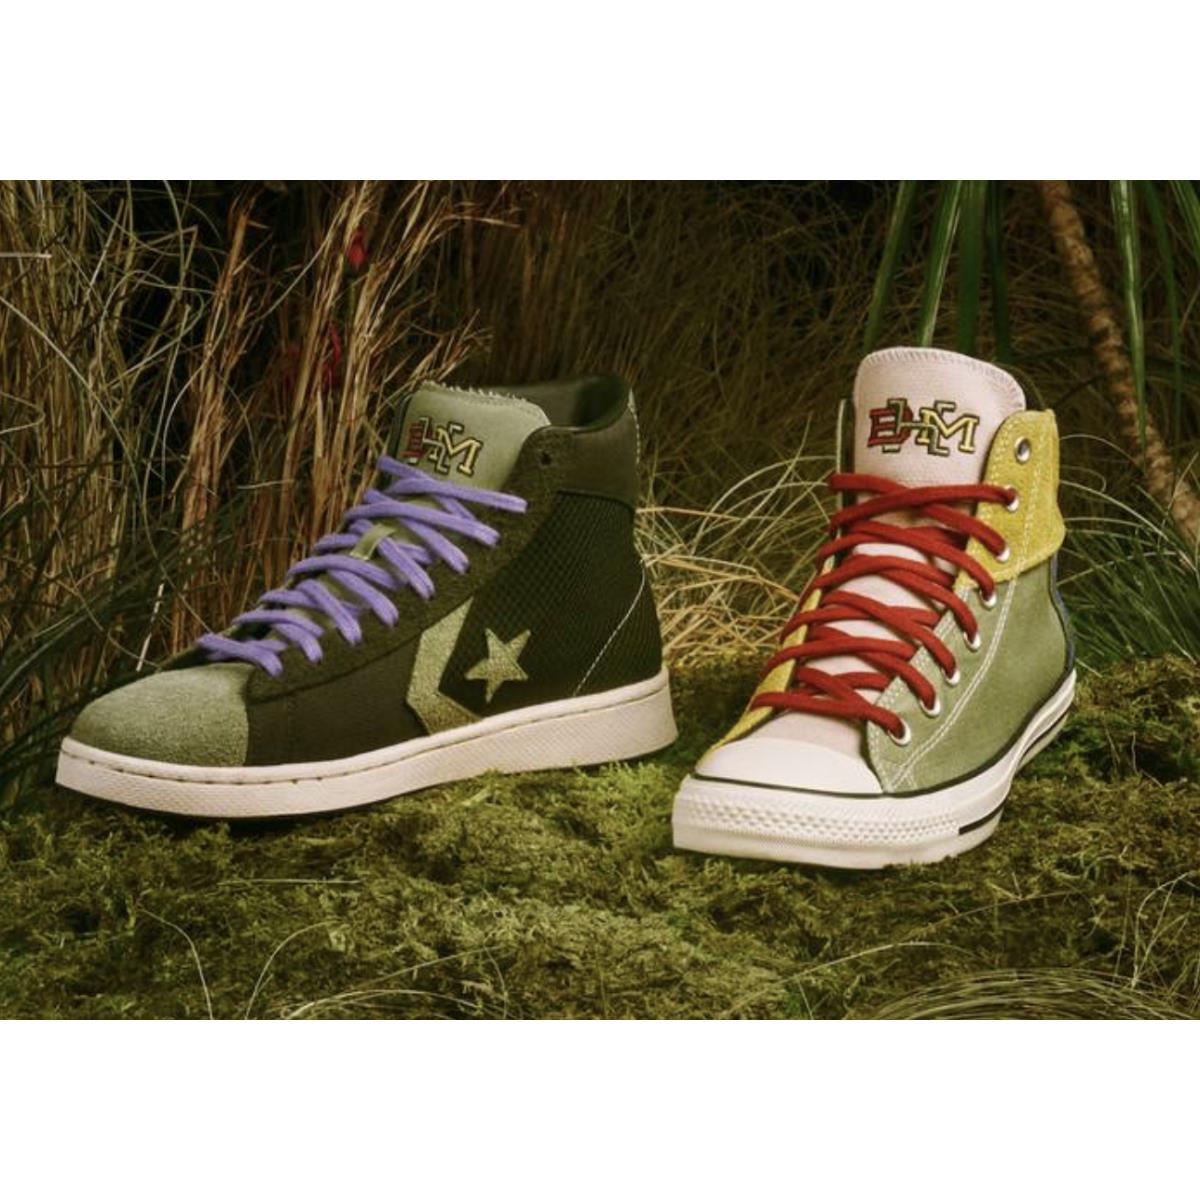 Converse Pro Leather Mid Black History Month Sequoia/egret Sz9 168273C Shoes